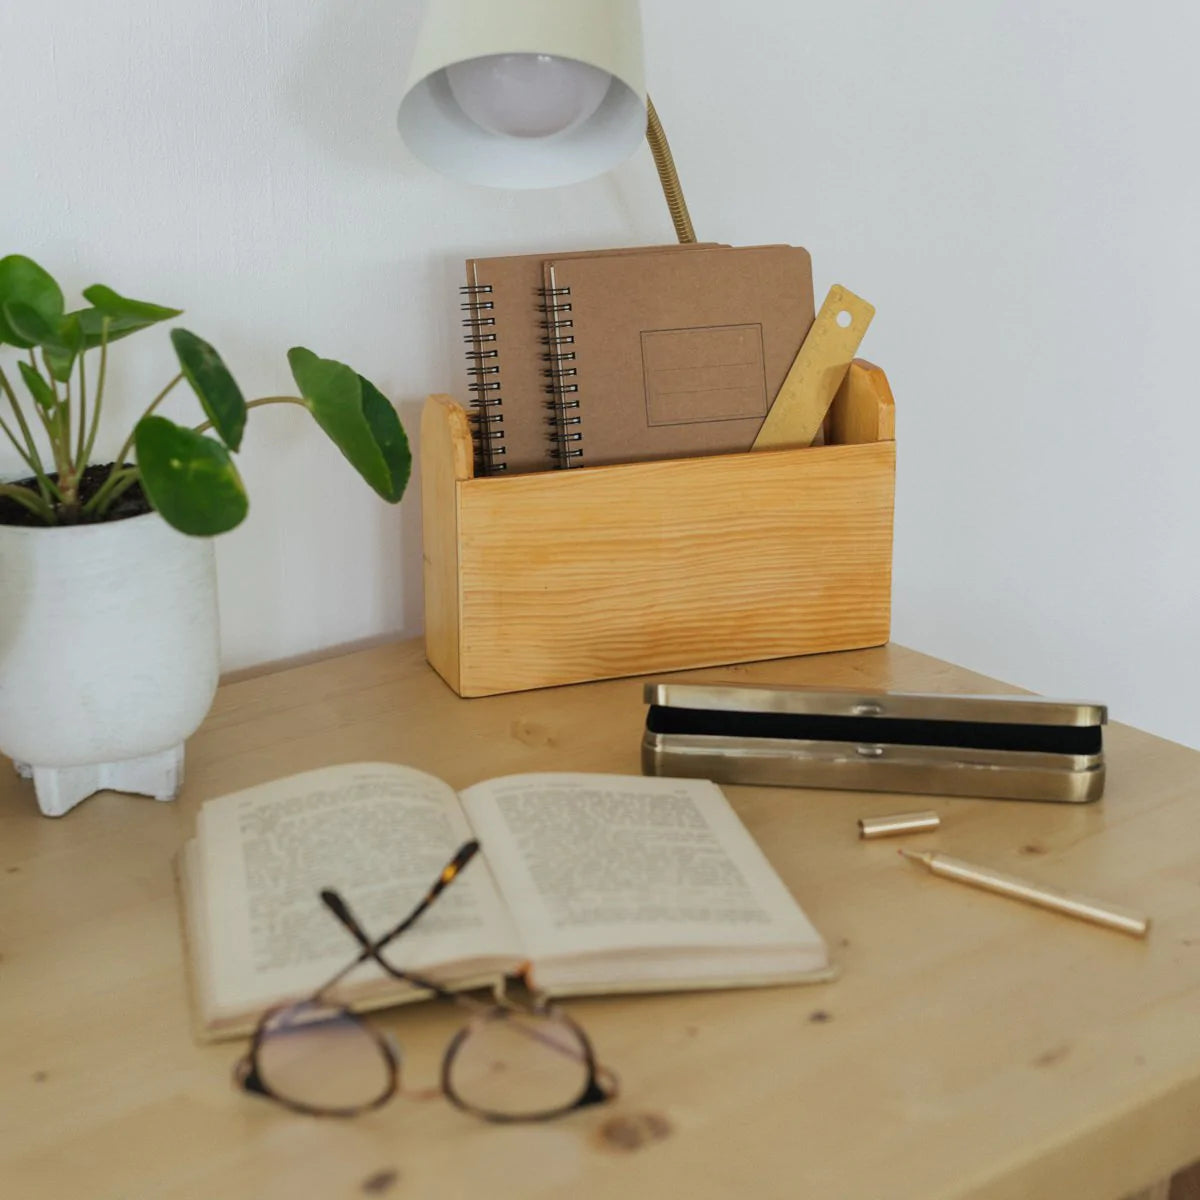 Cesta de madera Hali, el complemento perfecto para tu escritorio